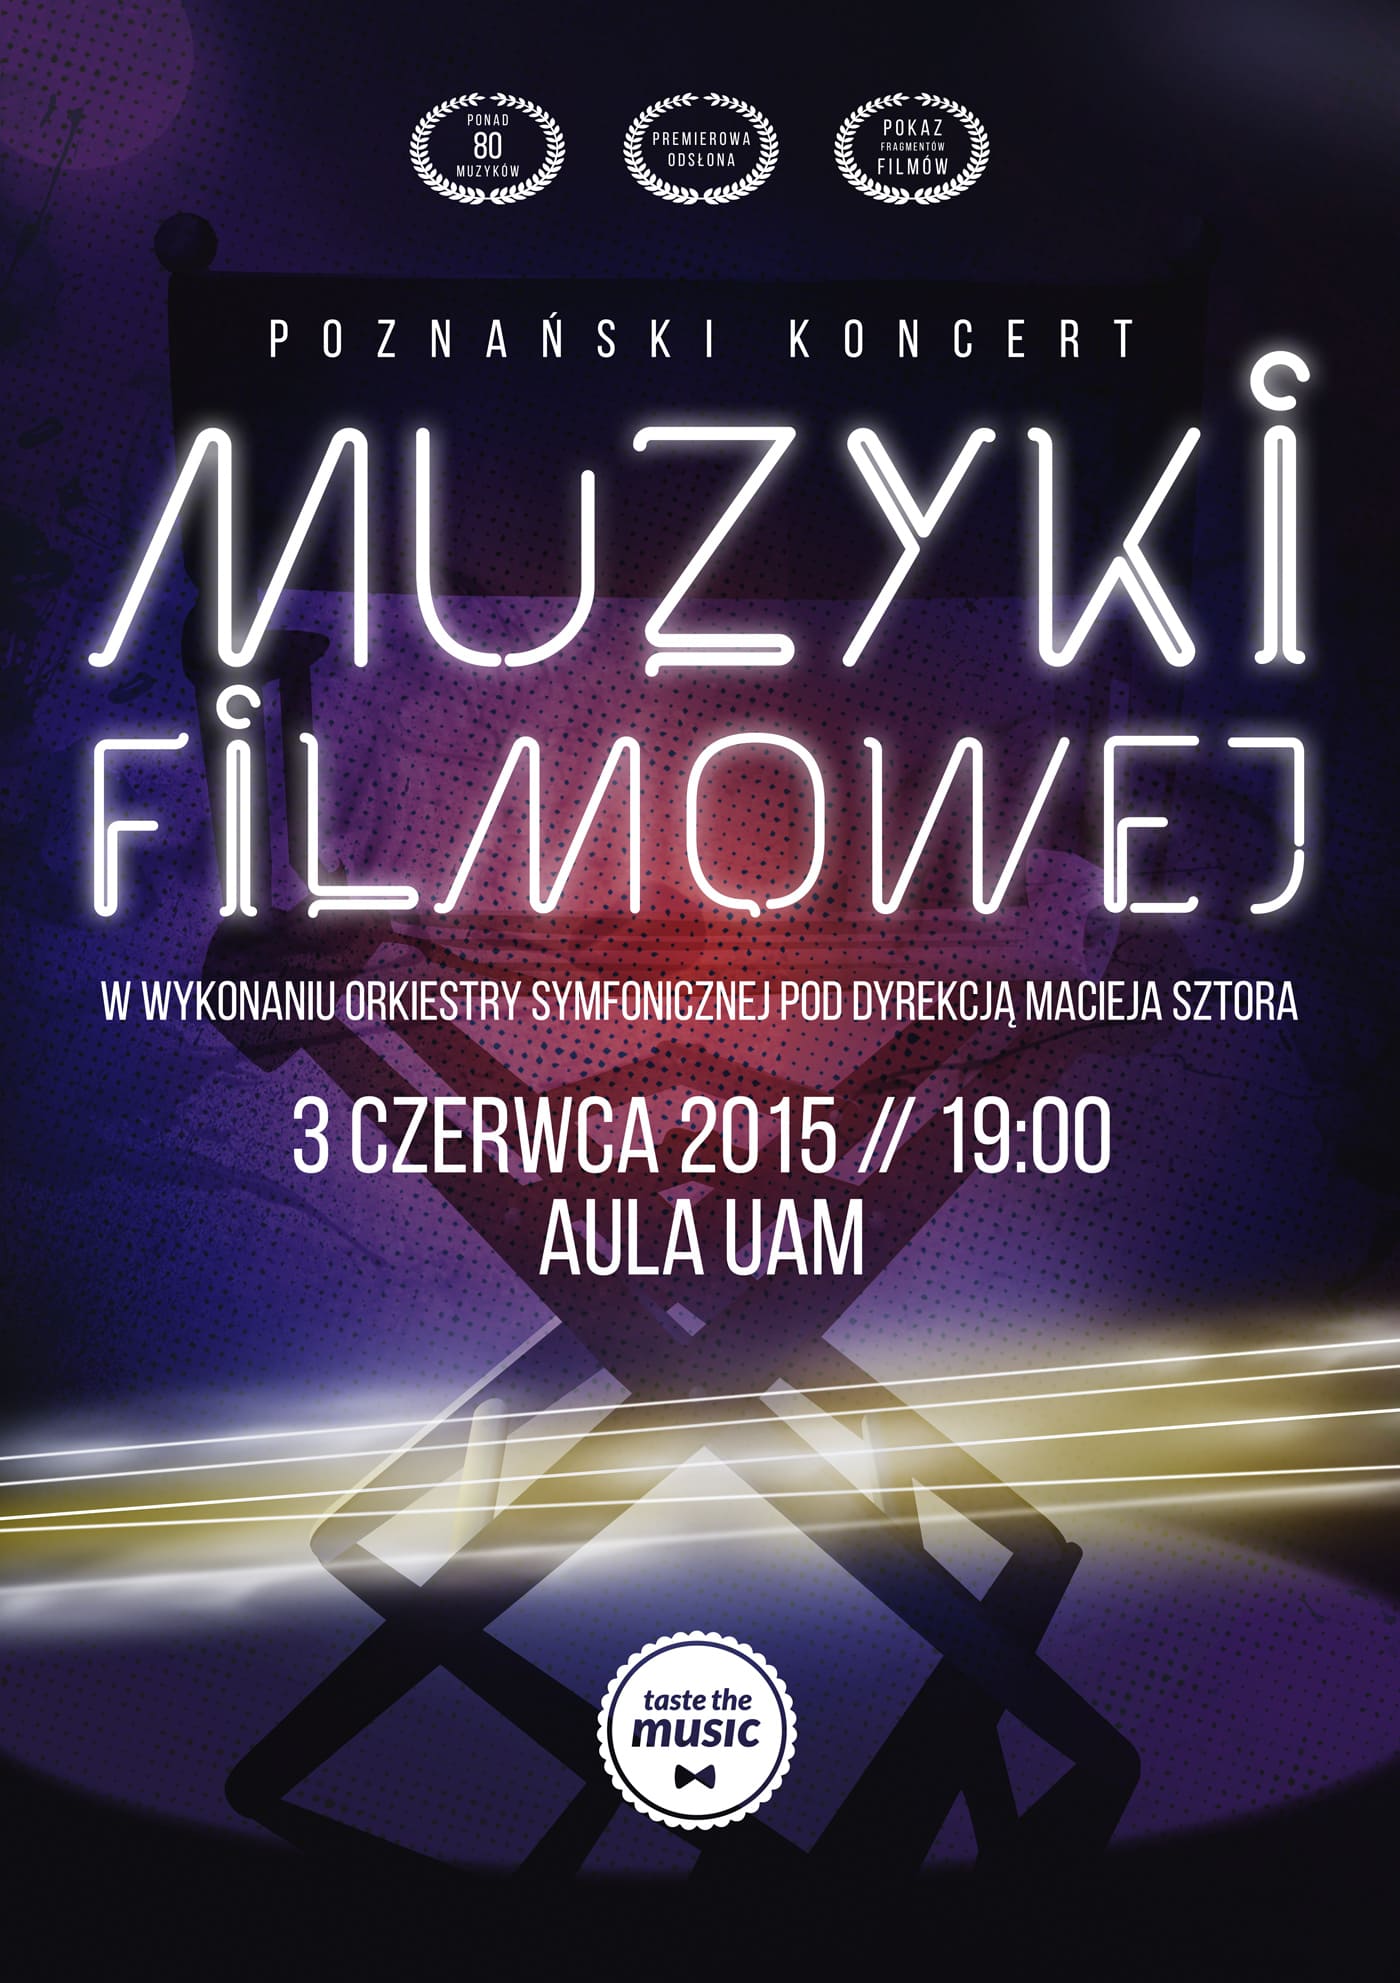 Poznański Koncert Muzyki FIlmowej (pion)